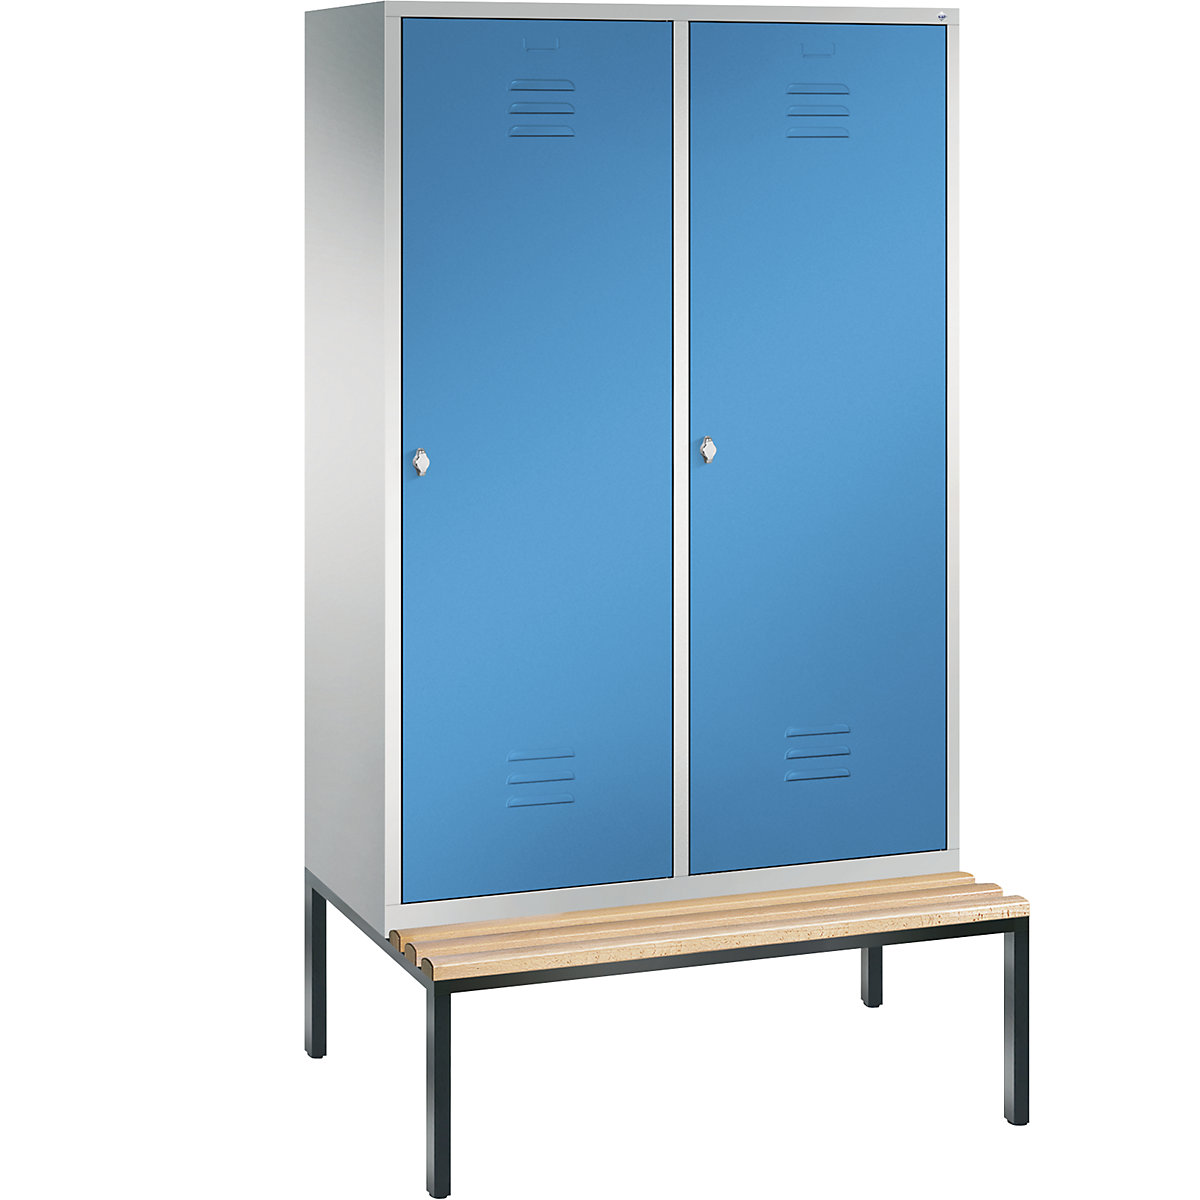 Šatní skříň s podstavnou lavicí CLASSIC s dveřmi přes 2 oddíly – C+P, 4 oddíly, šířka oddílu 300 mm, světlá šedá / světlá modrá-3